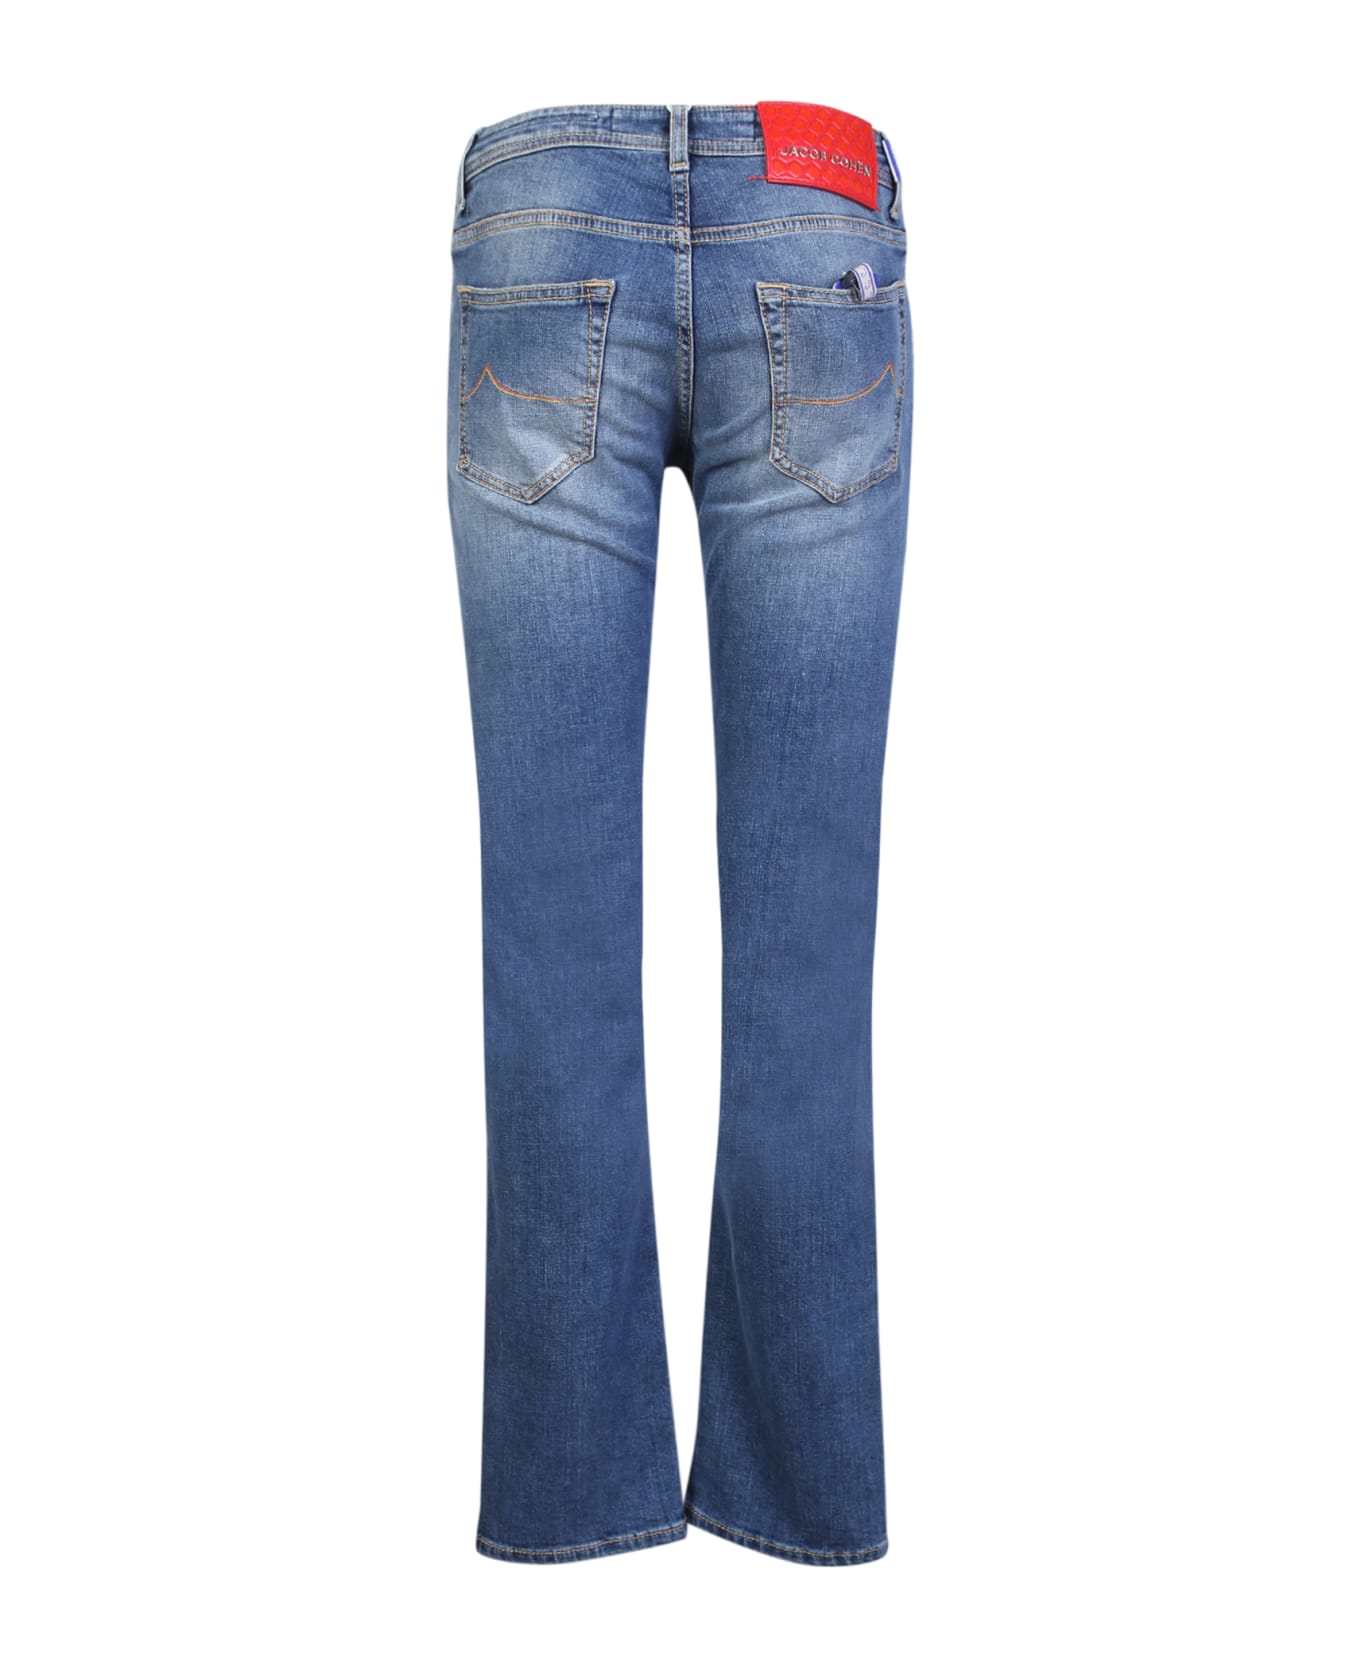 Jacob Cohen Nick Slim 5-pocket Blue Denim Jeans - Blue デニム